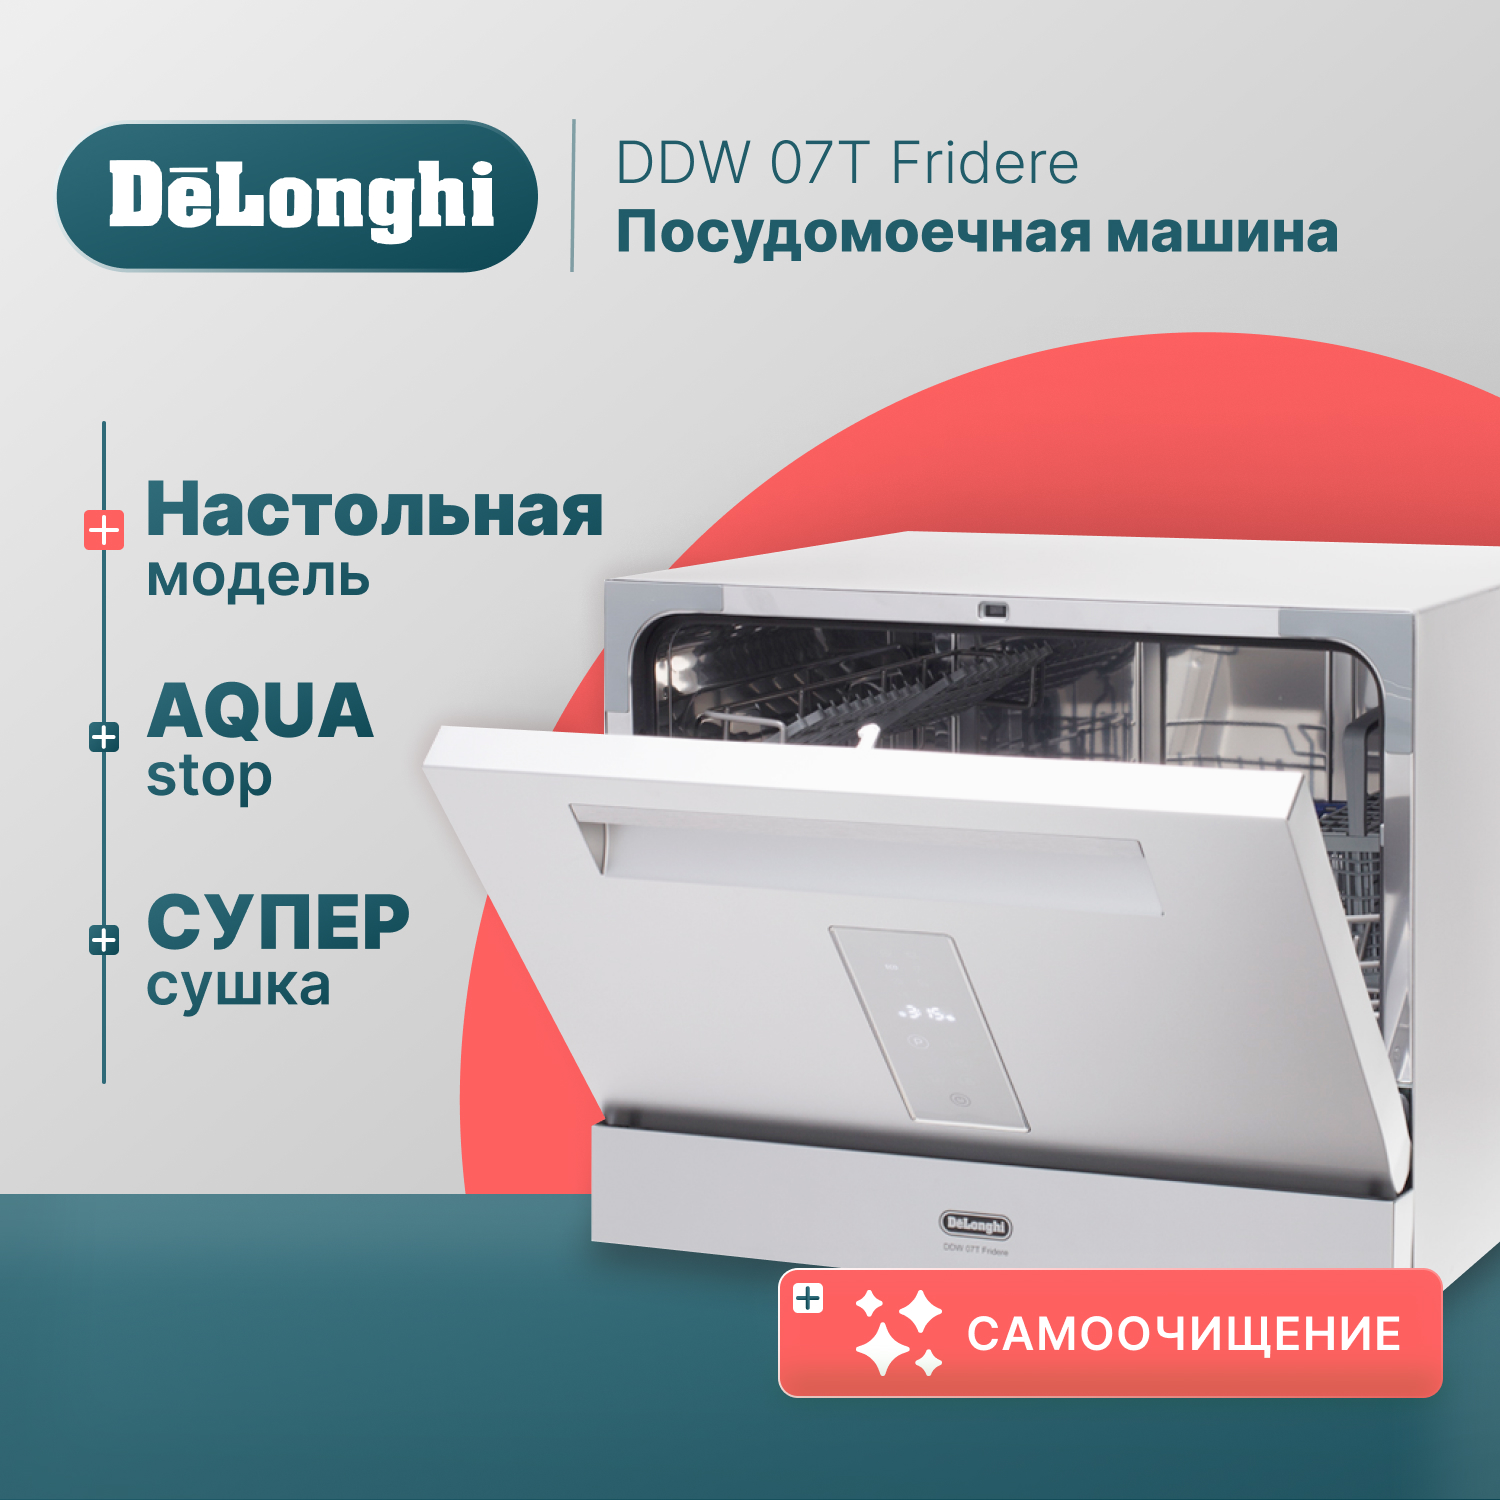 Посудомоечная машина Delonghi DDW07T Fridere серебристый посудомоечная машина delonghi ddw07t fridere серебристый